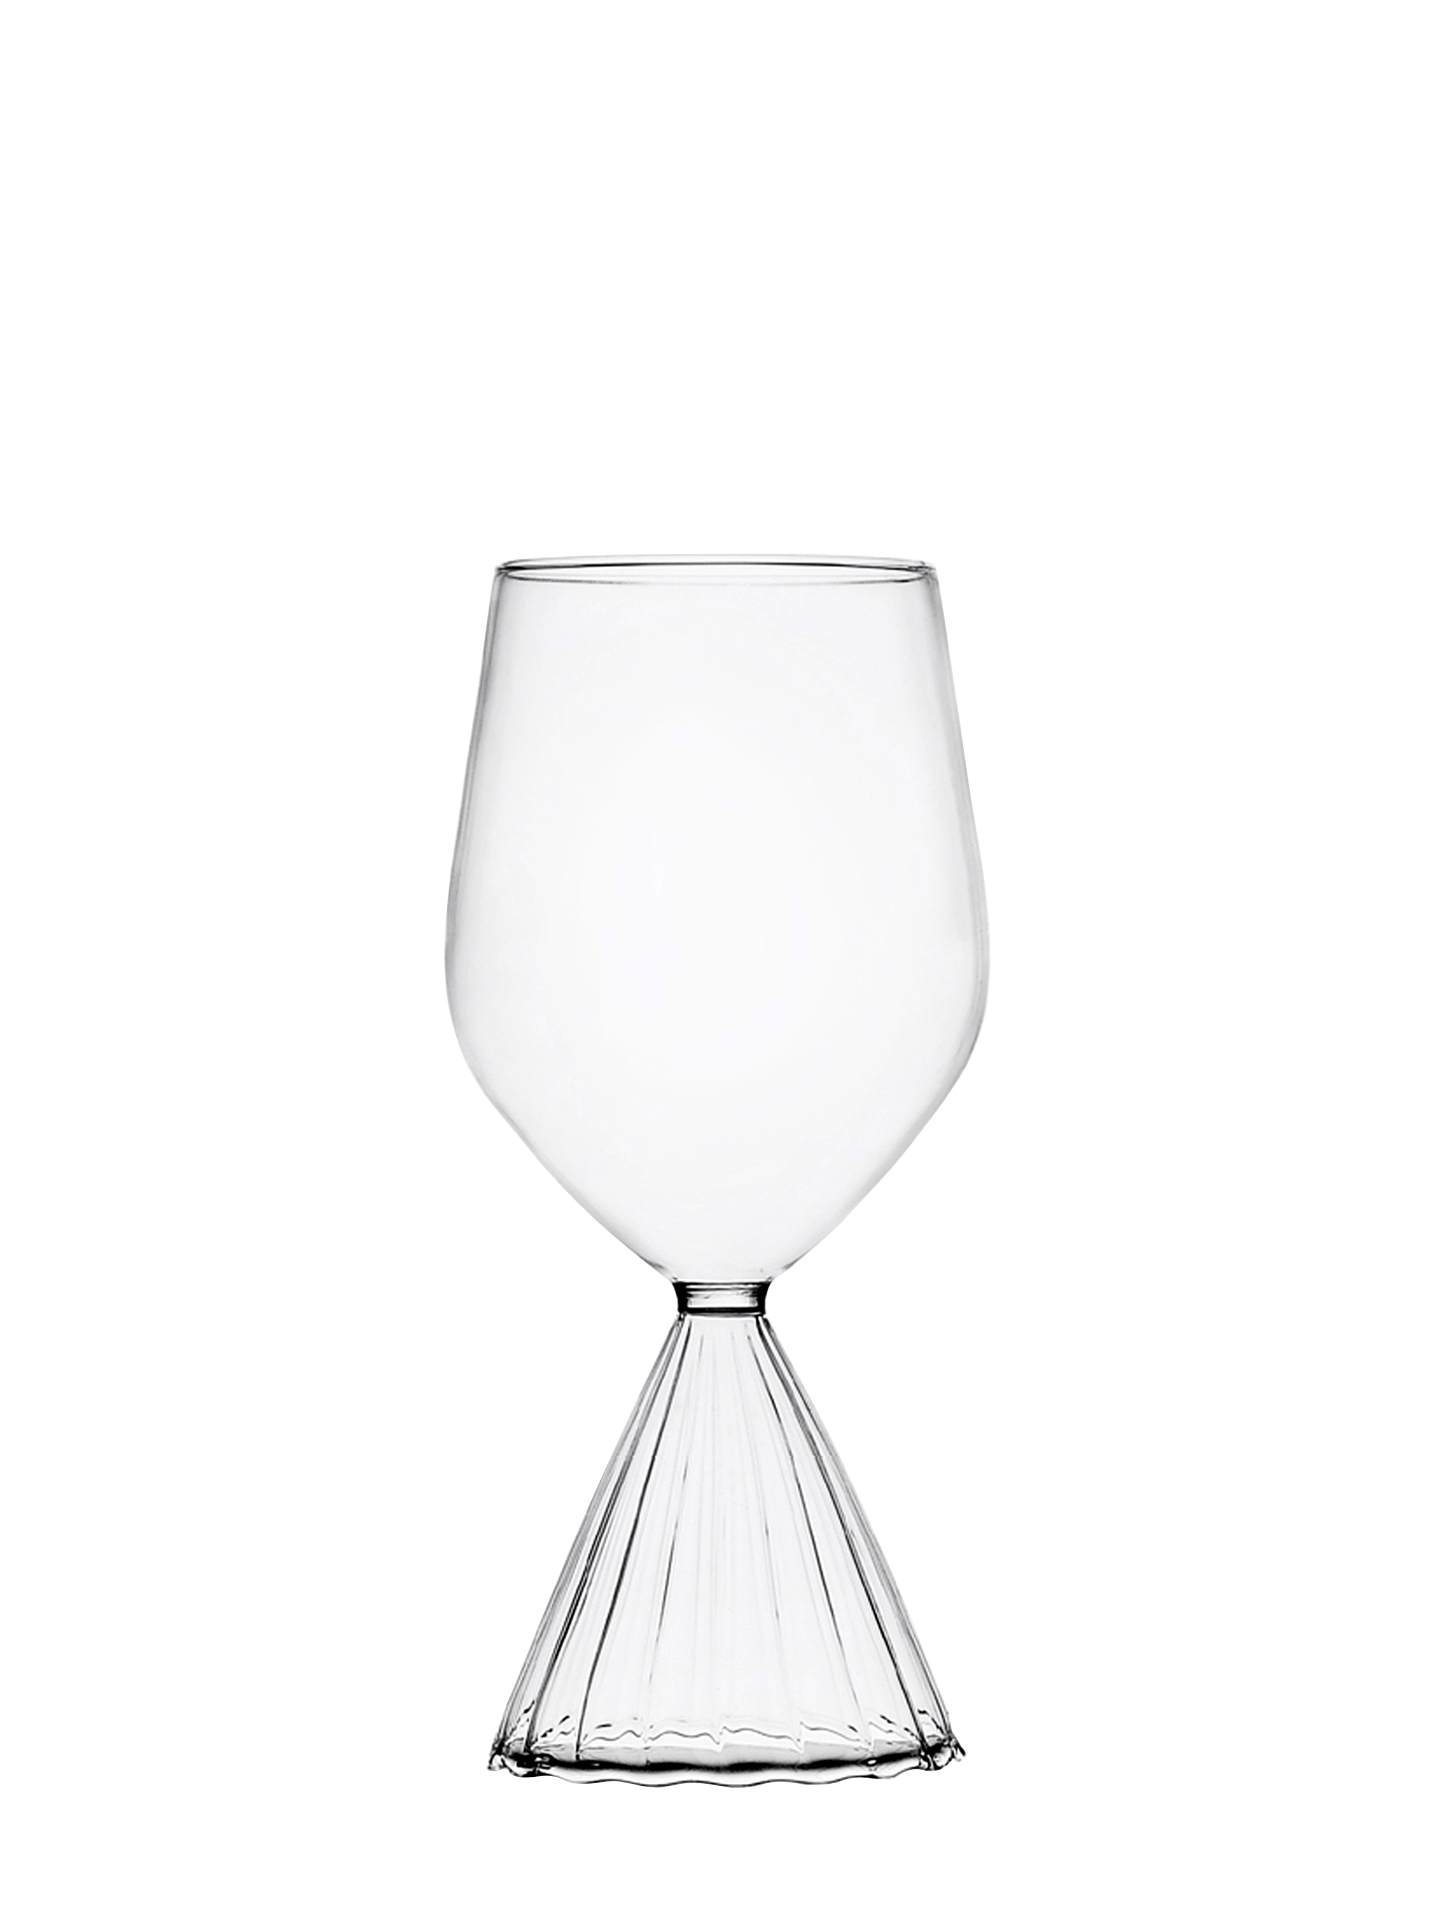 Tutu wine glass